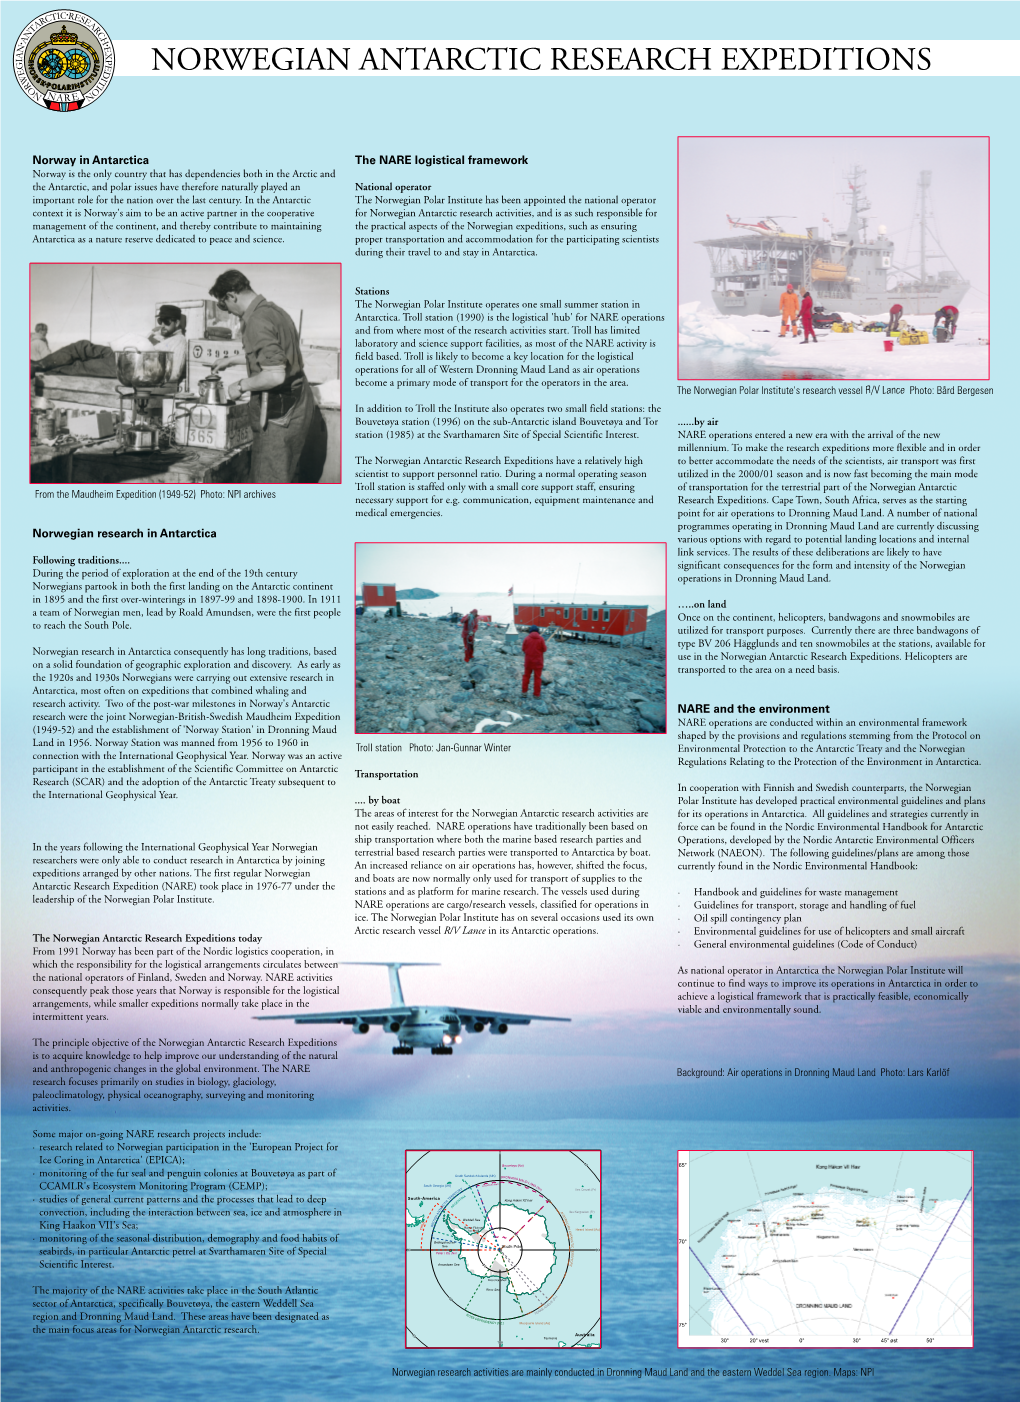 Norway in Antarctica Norwegian Research in Antarctica the NARE